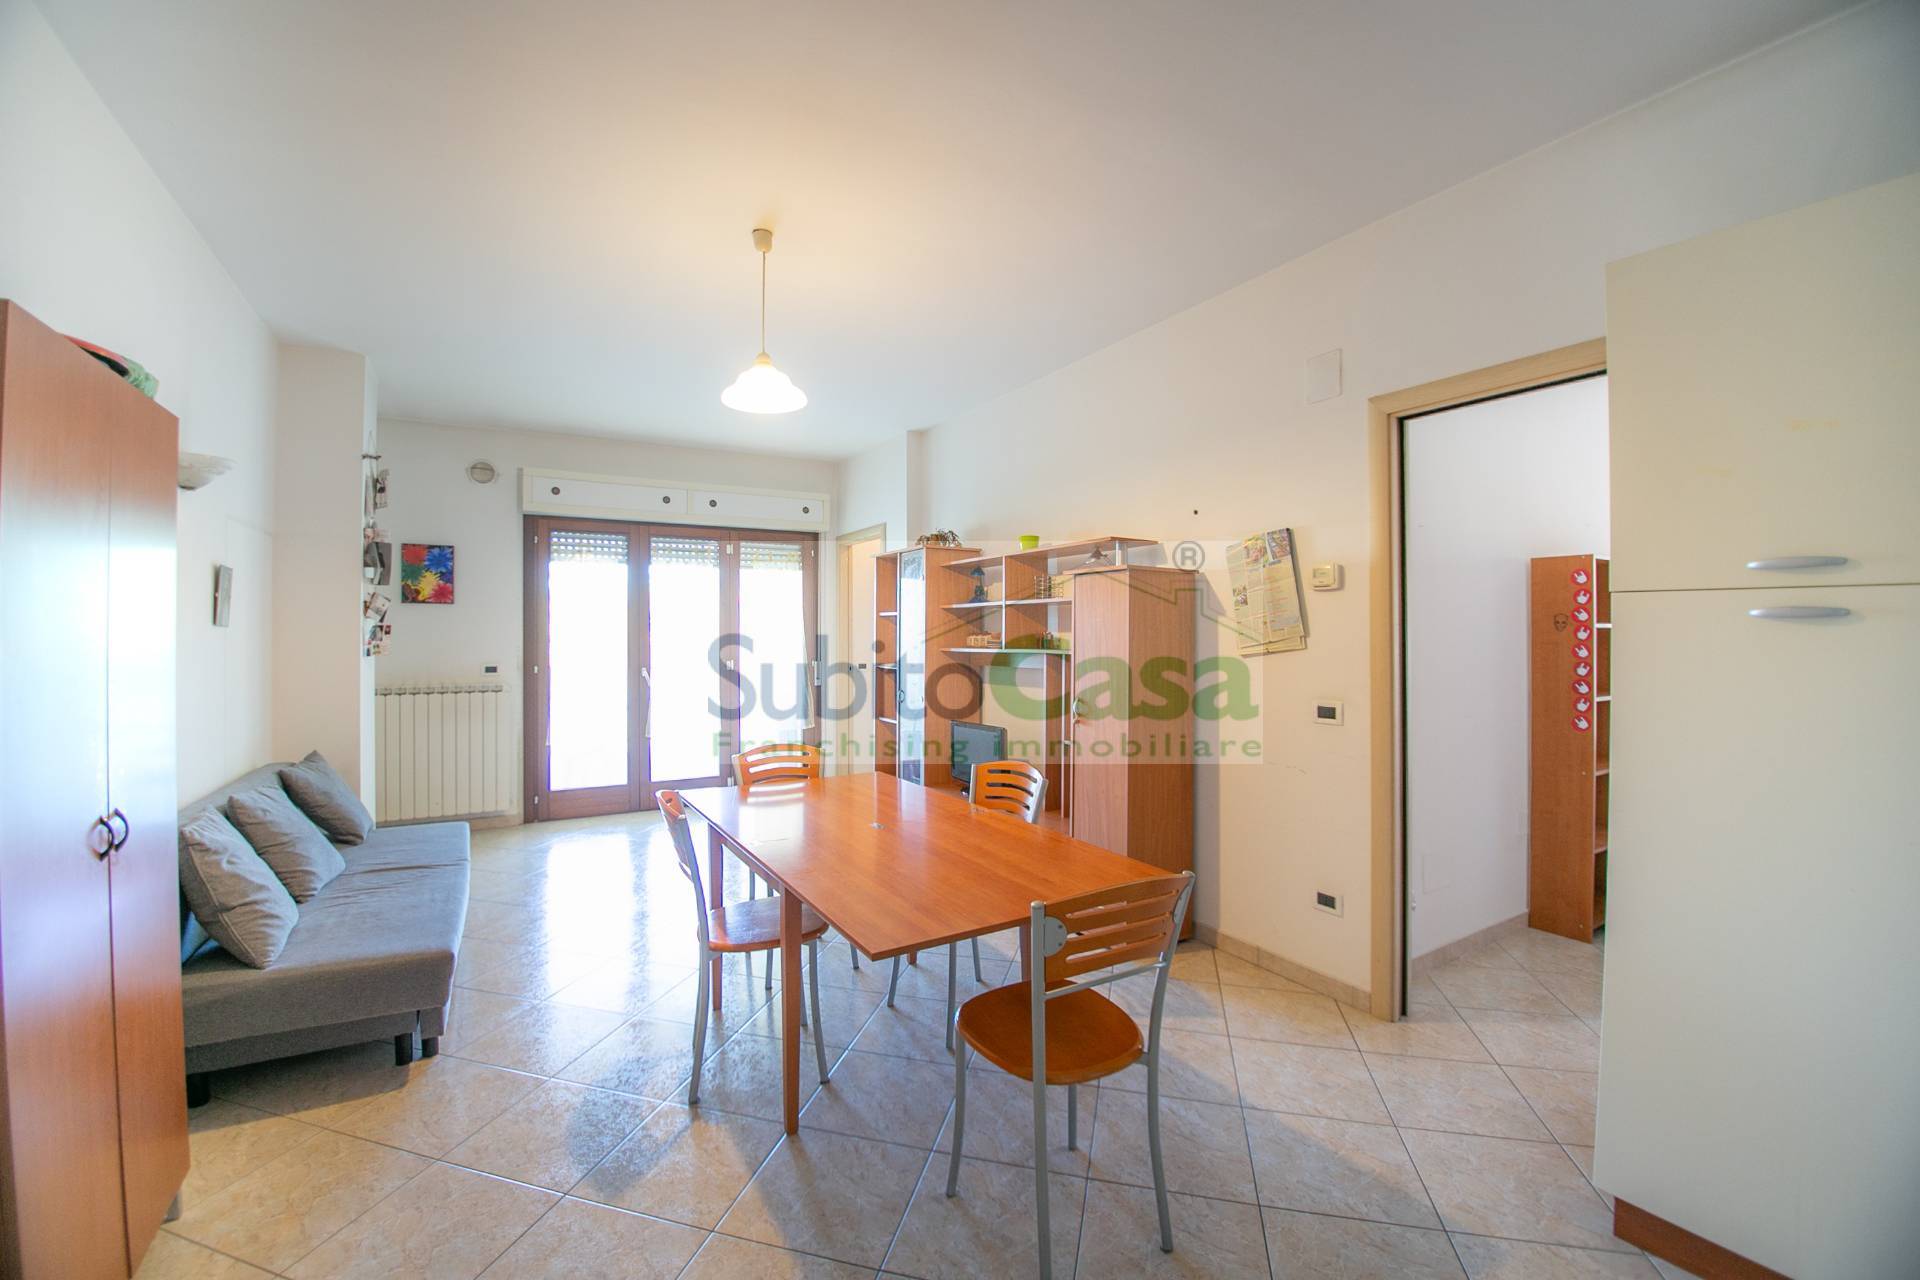 Appartamento in affitto a Chieti, 4 locali, zona Località: ChietiScaloZonaStazione, prezzo € 235 | PortaleAgenzieImmobiliari.it